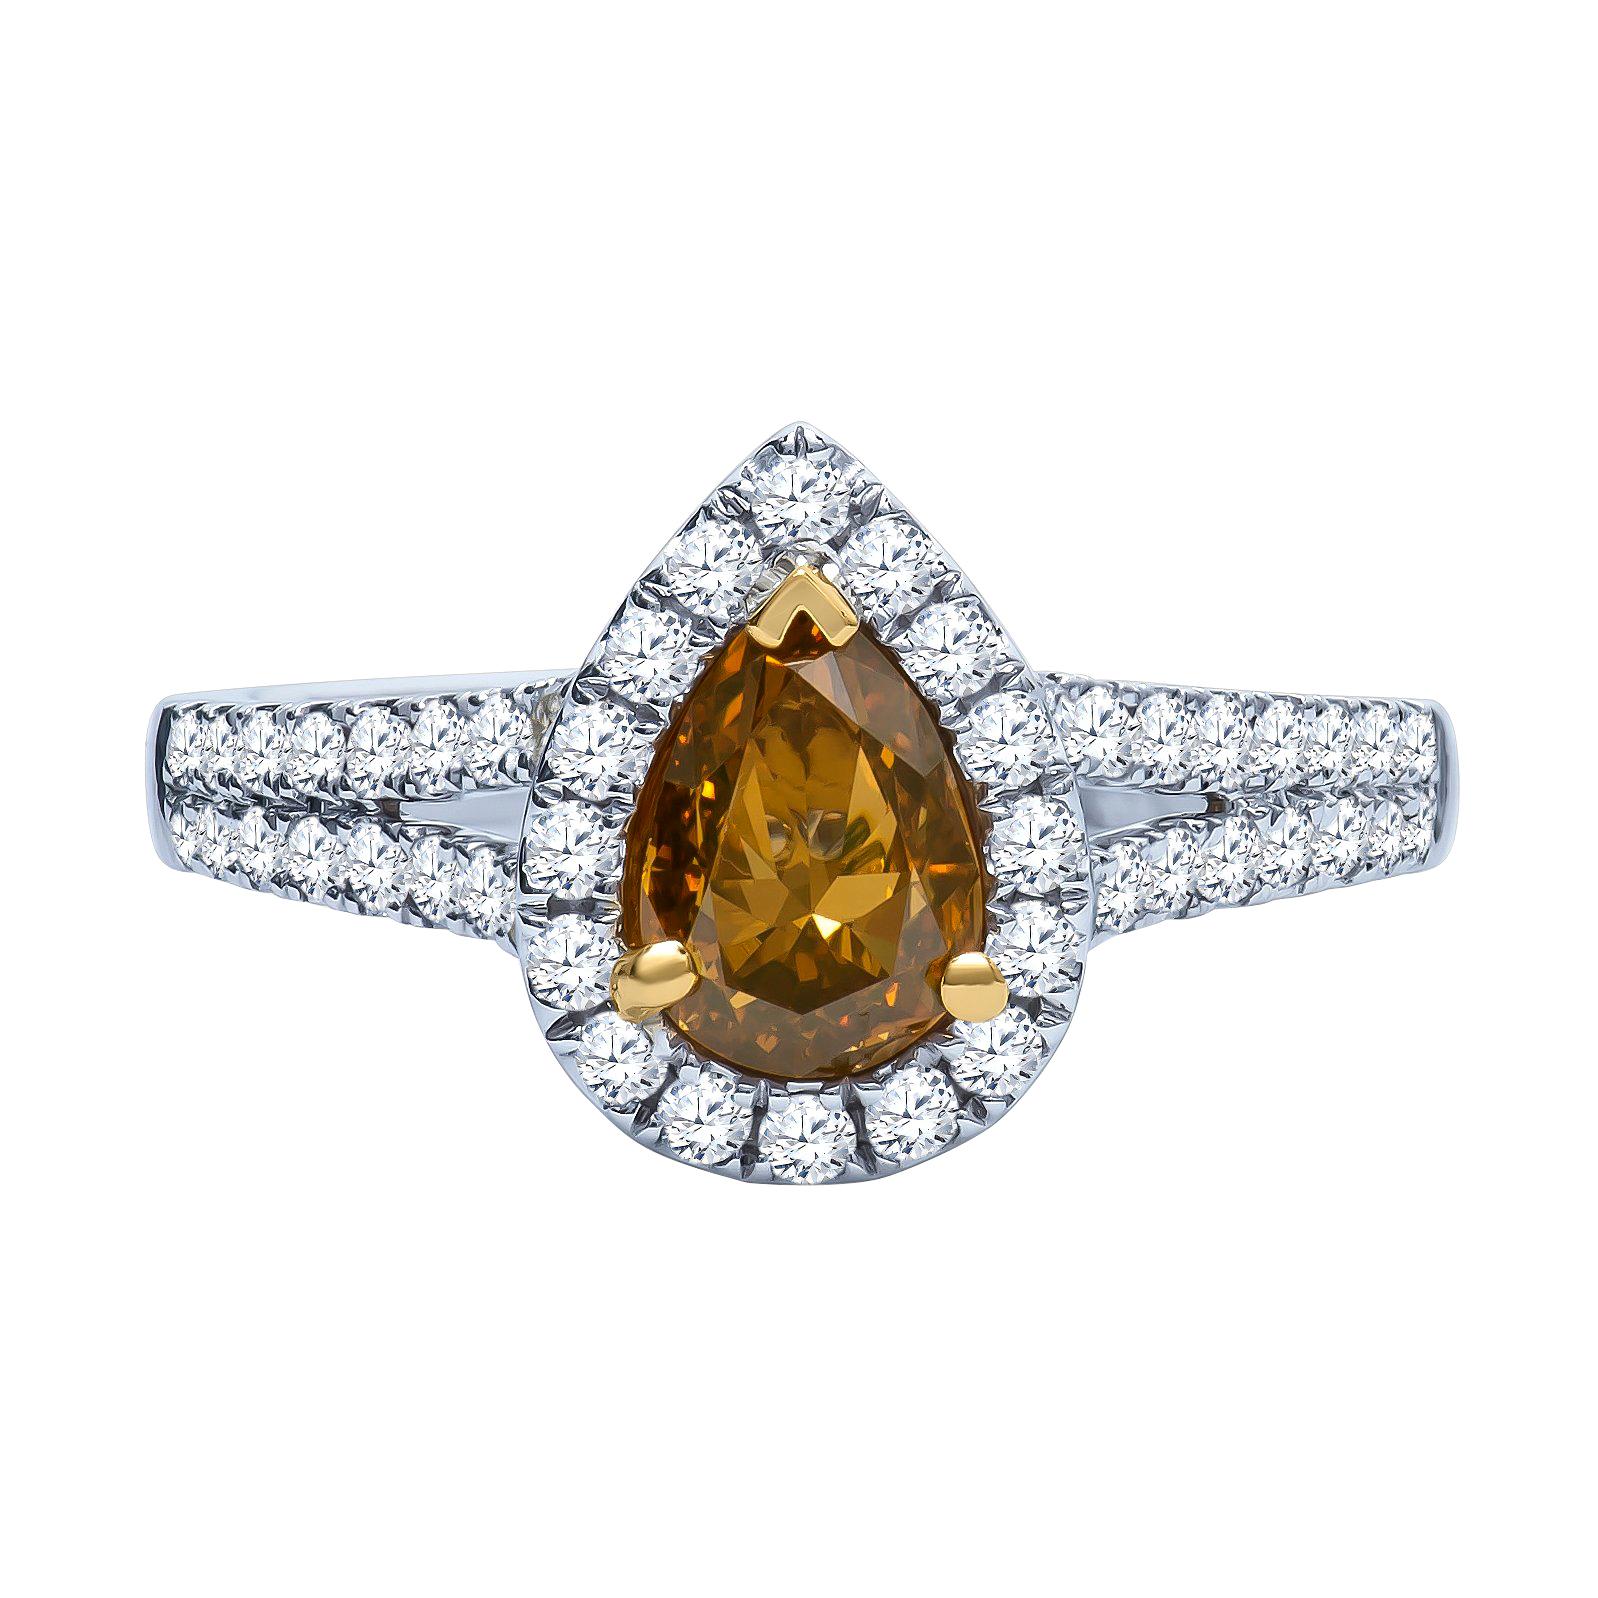 Bague de fiançailles avec diamant central de couleur marron et jaune fantaisie en forme de poire de 1,00 carat